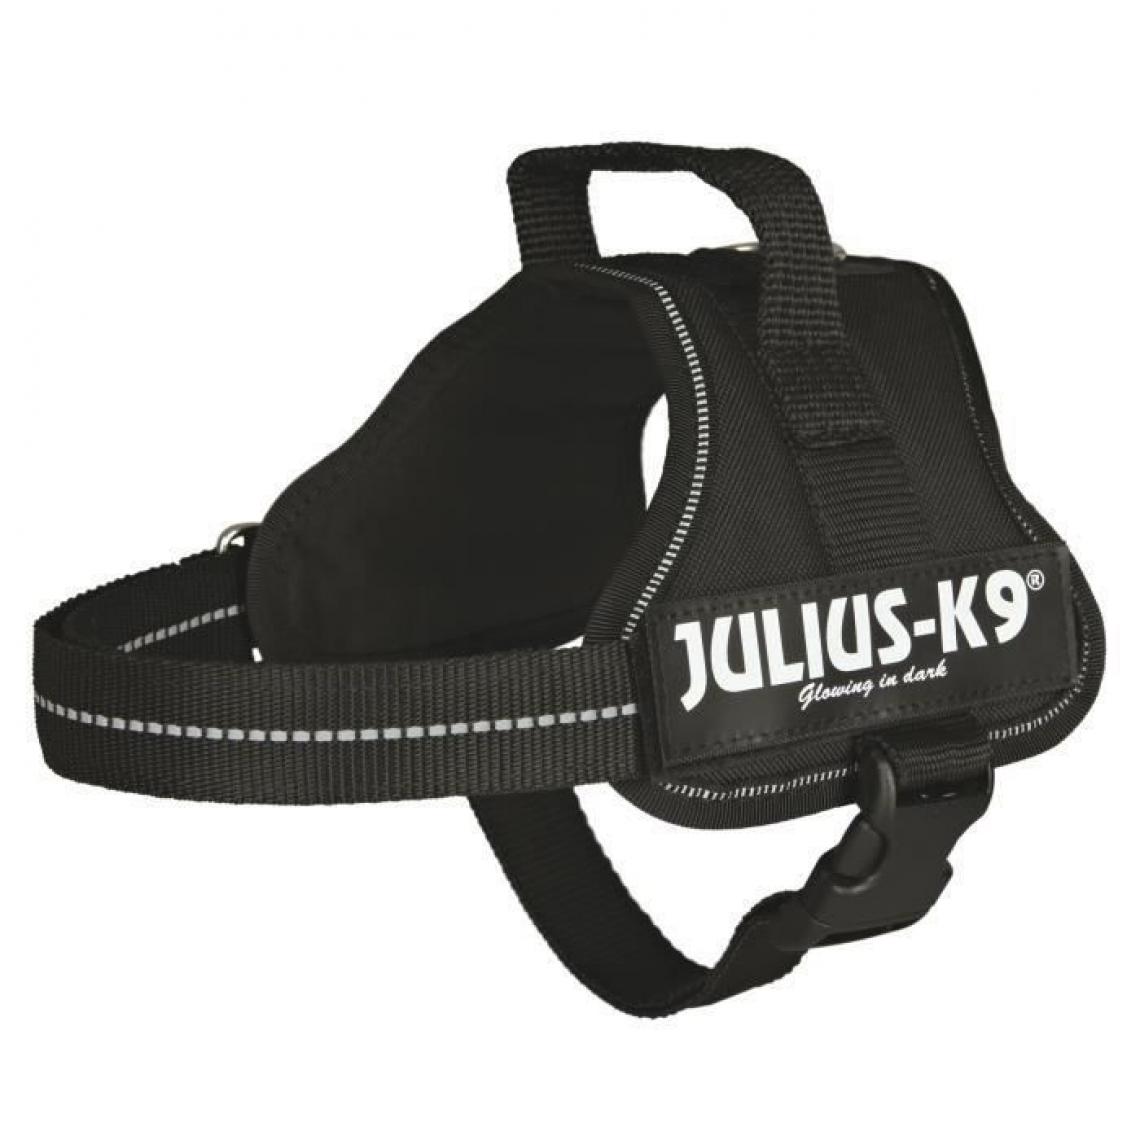 Julius K9 - Harnais Power Julius-K9 - Mini - M : 51-67 cm-28 mm - Noir - Pour chien - Equipement de transport pour chien